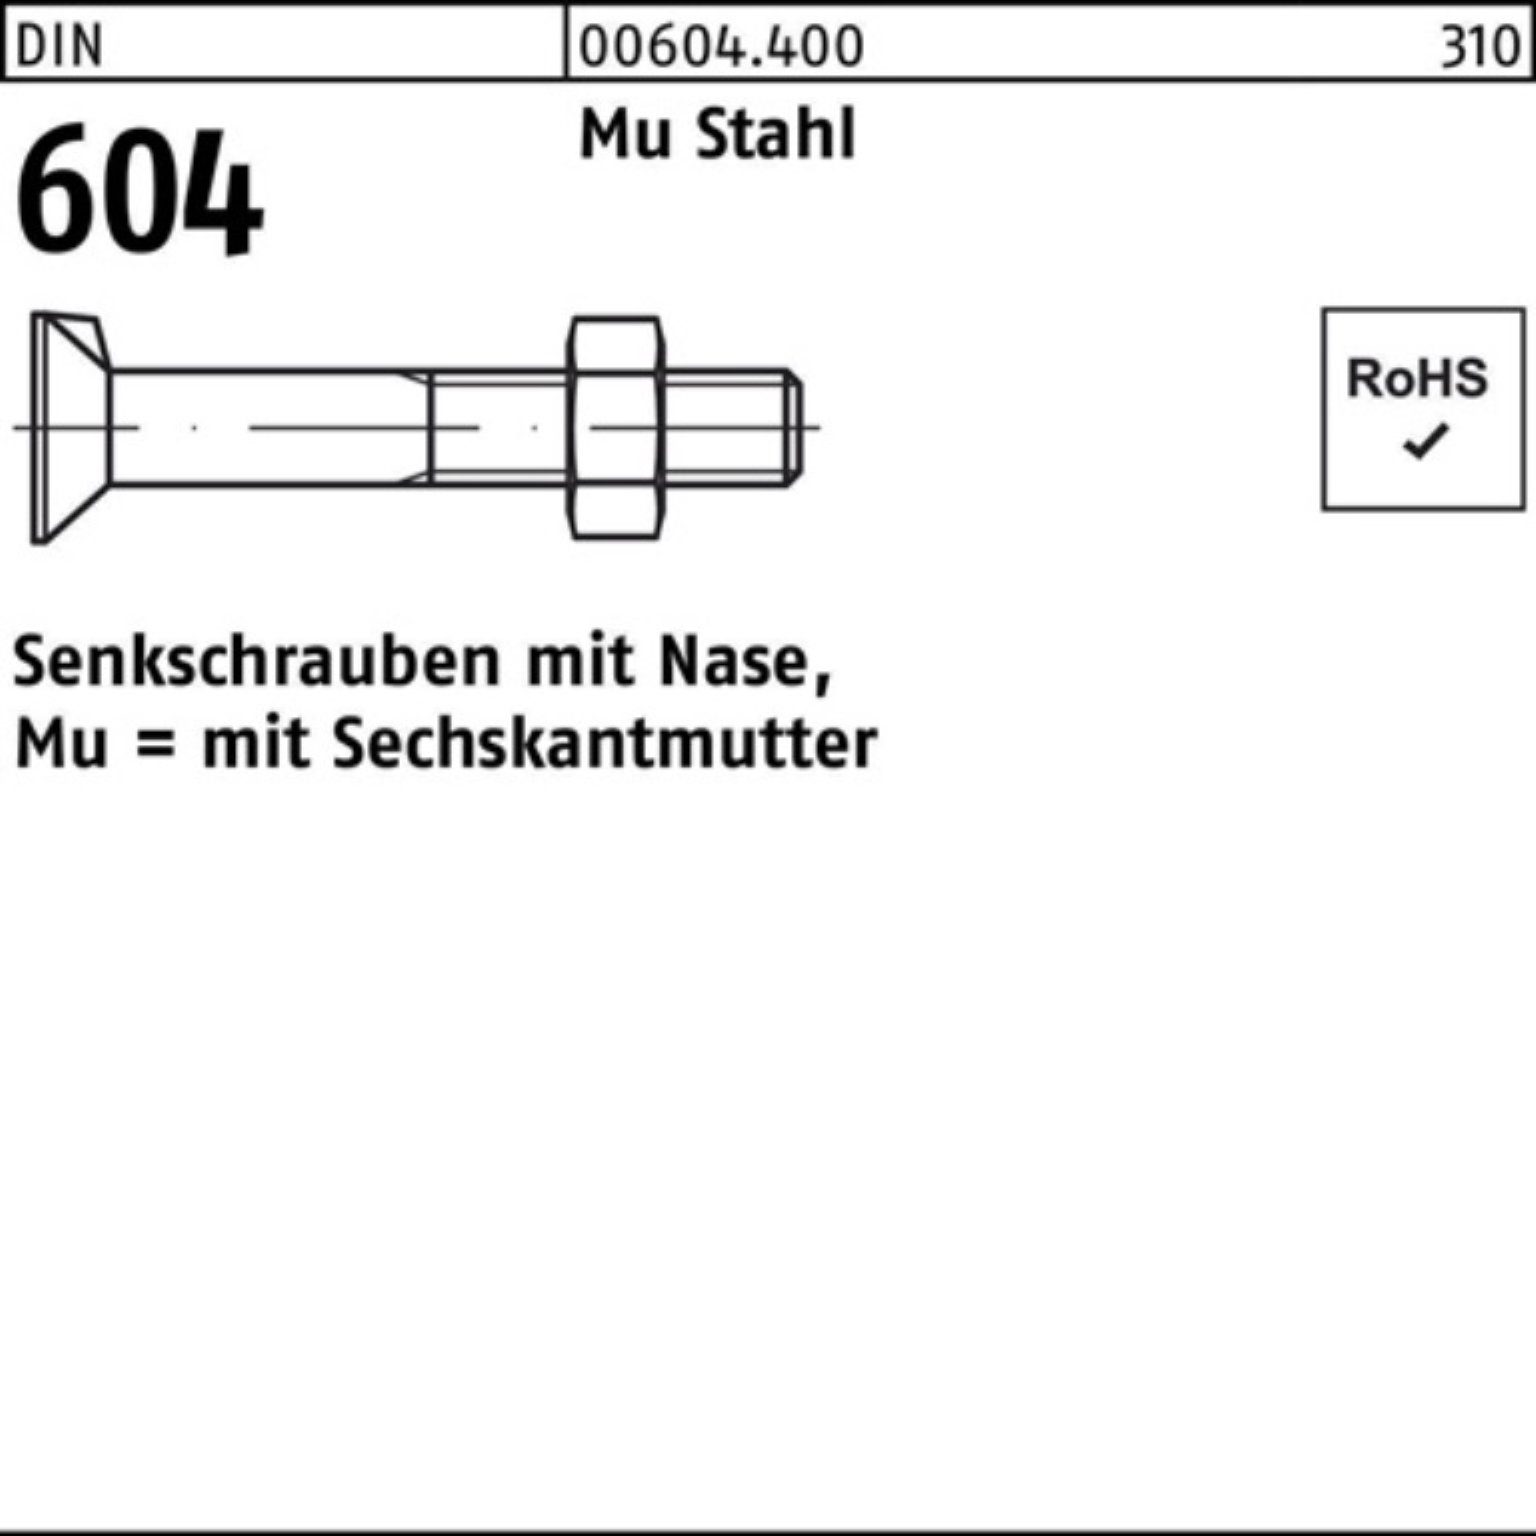 Reyher Senkschraube 200er Pack Senkschraube DIN 604 Nase/6-ktmutter M6x 35 Mu Stahl 4.6 20 | Schrauben